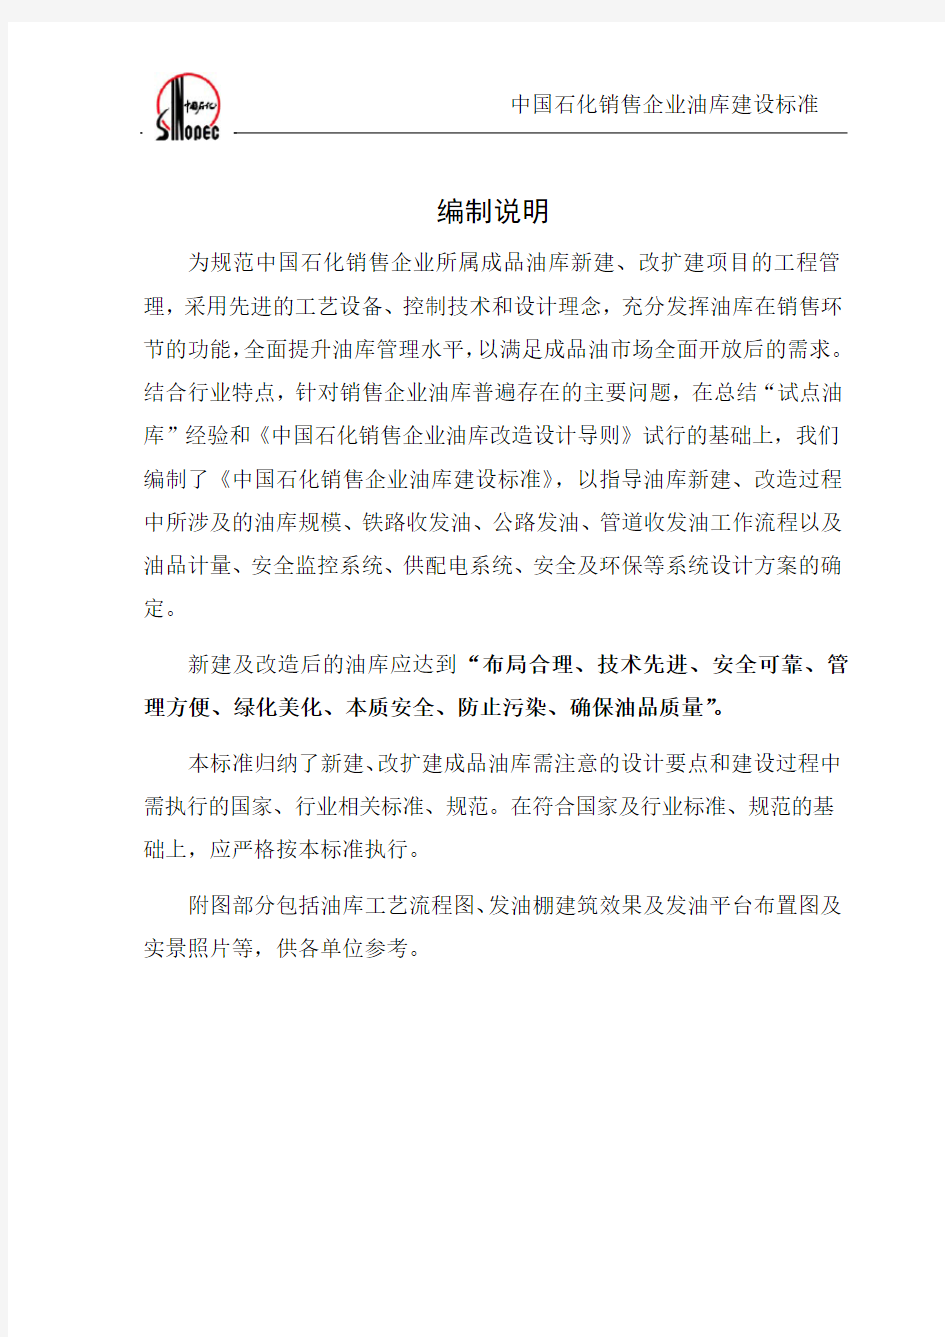 中国石化销售企业油库建设标准.pdf